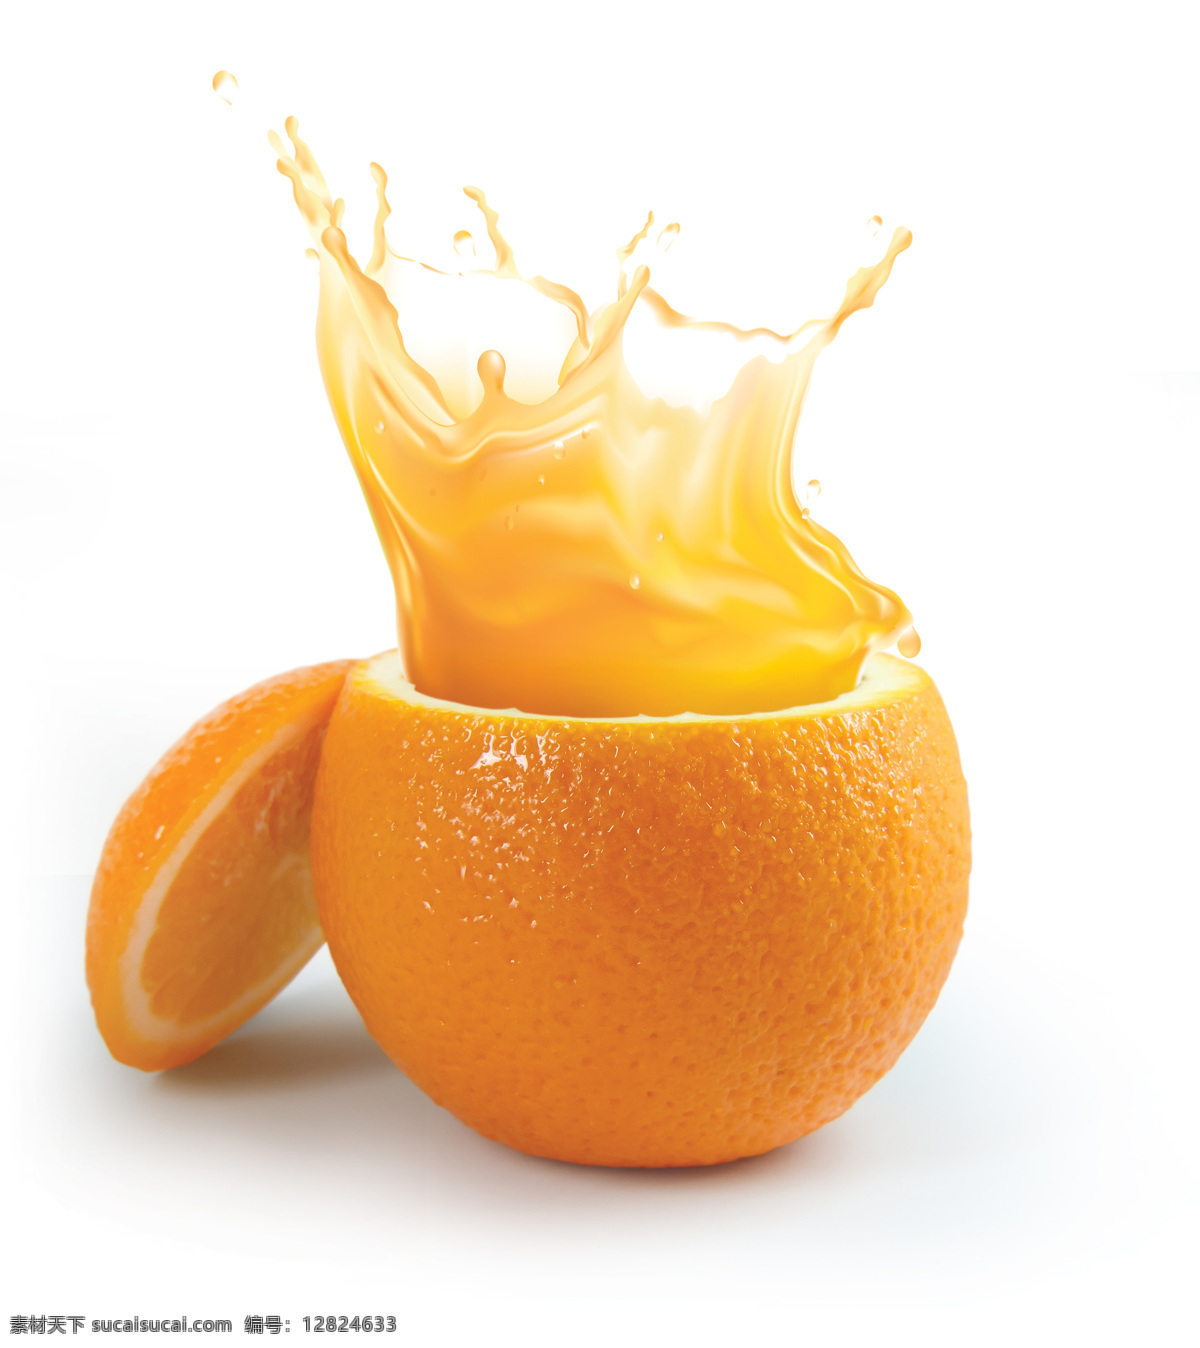 橙子 橙汁 切开橙子 喷洒 出来 酒水饮料 酒类图片 餐饮美食